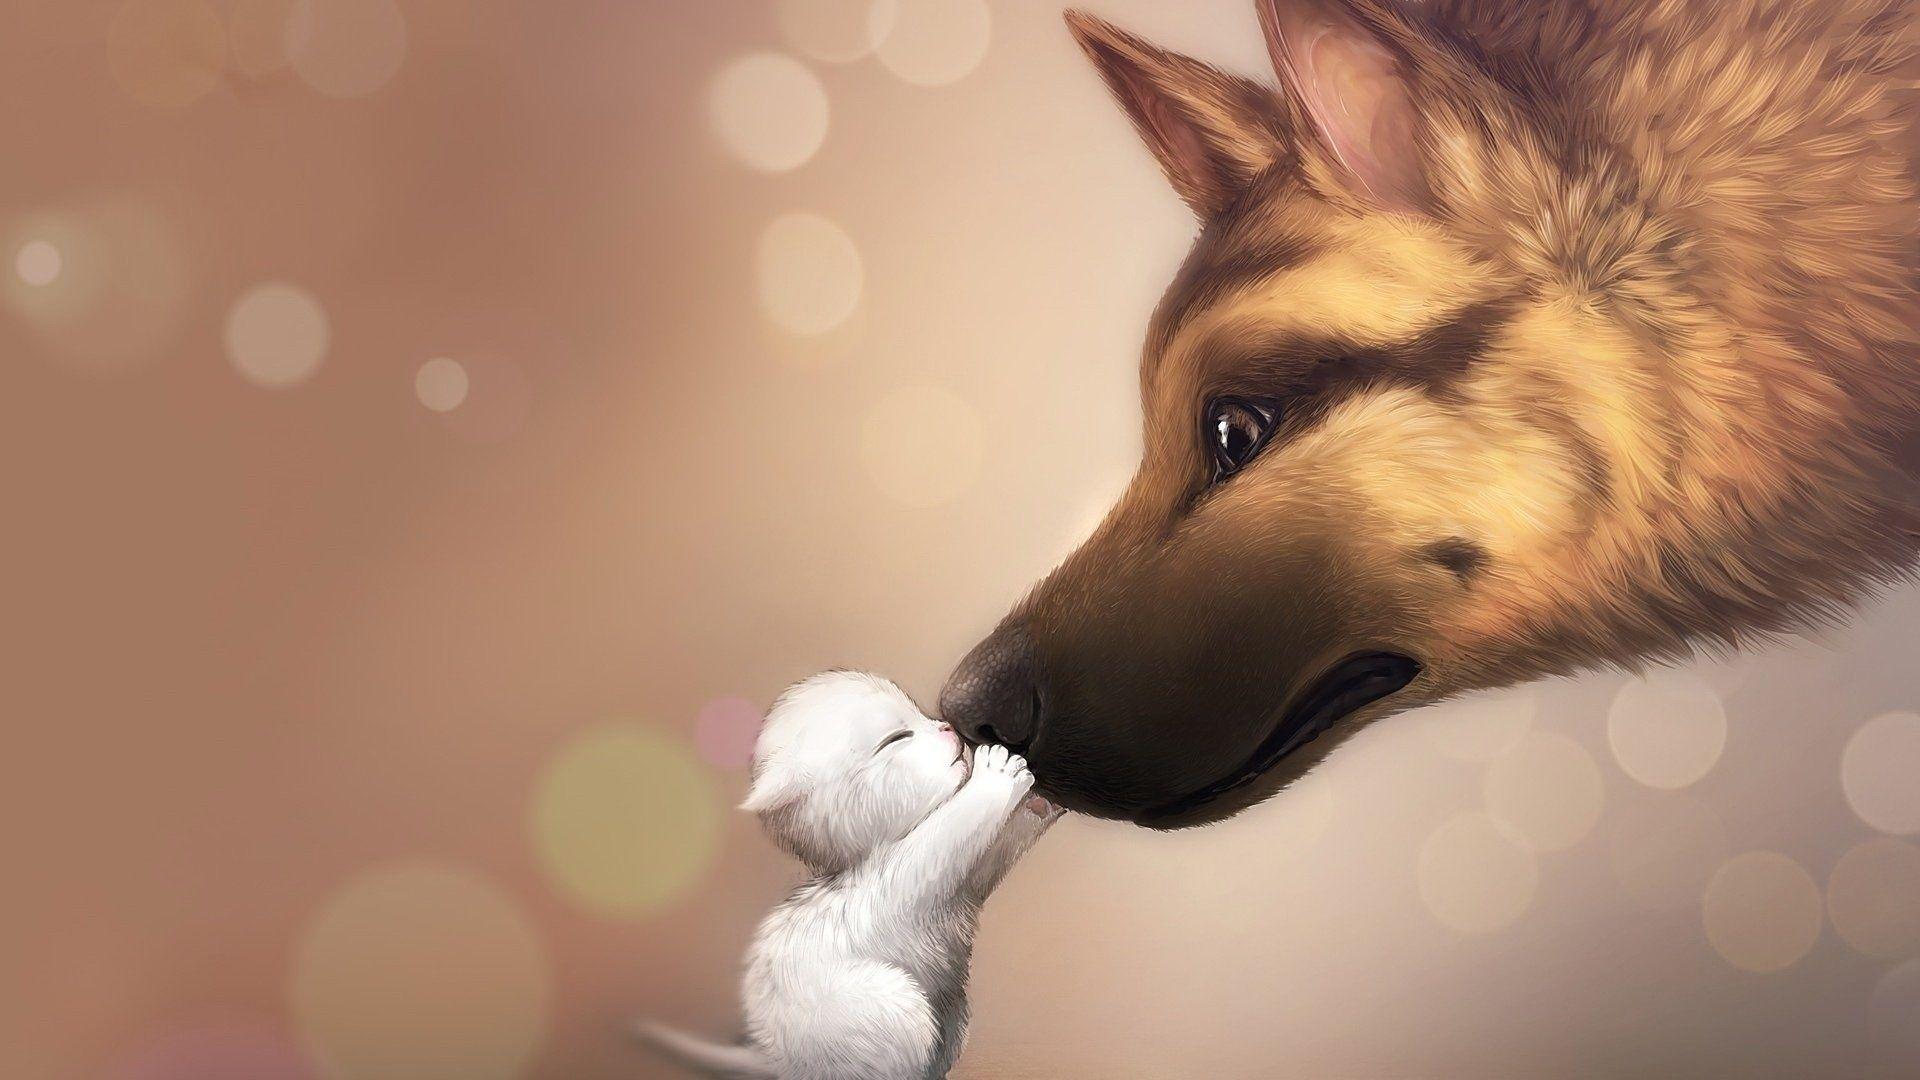 Cute Anime Dog Japanese Manga Doggy Dogs Vaporwave Painting by Amango  Design  Pixels